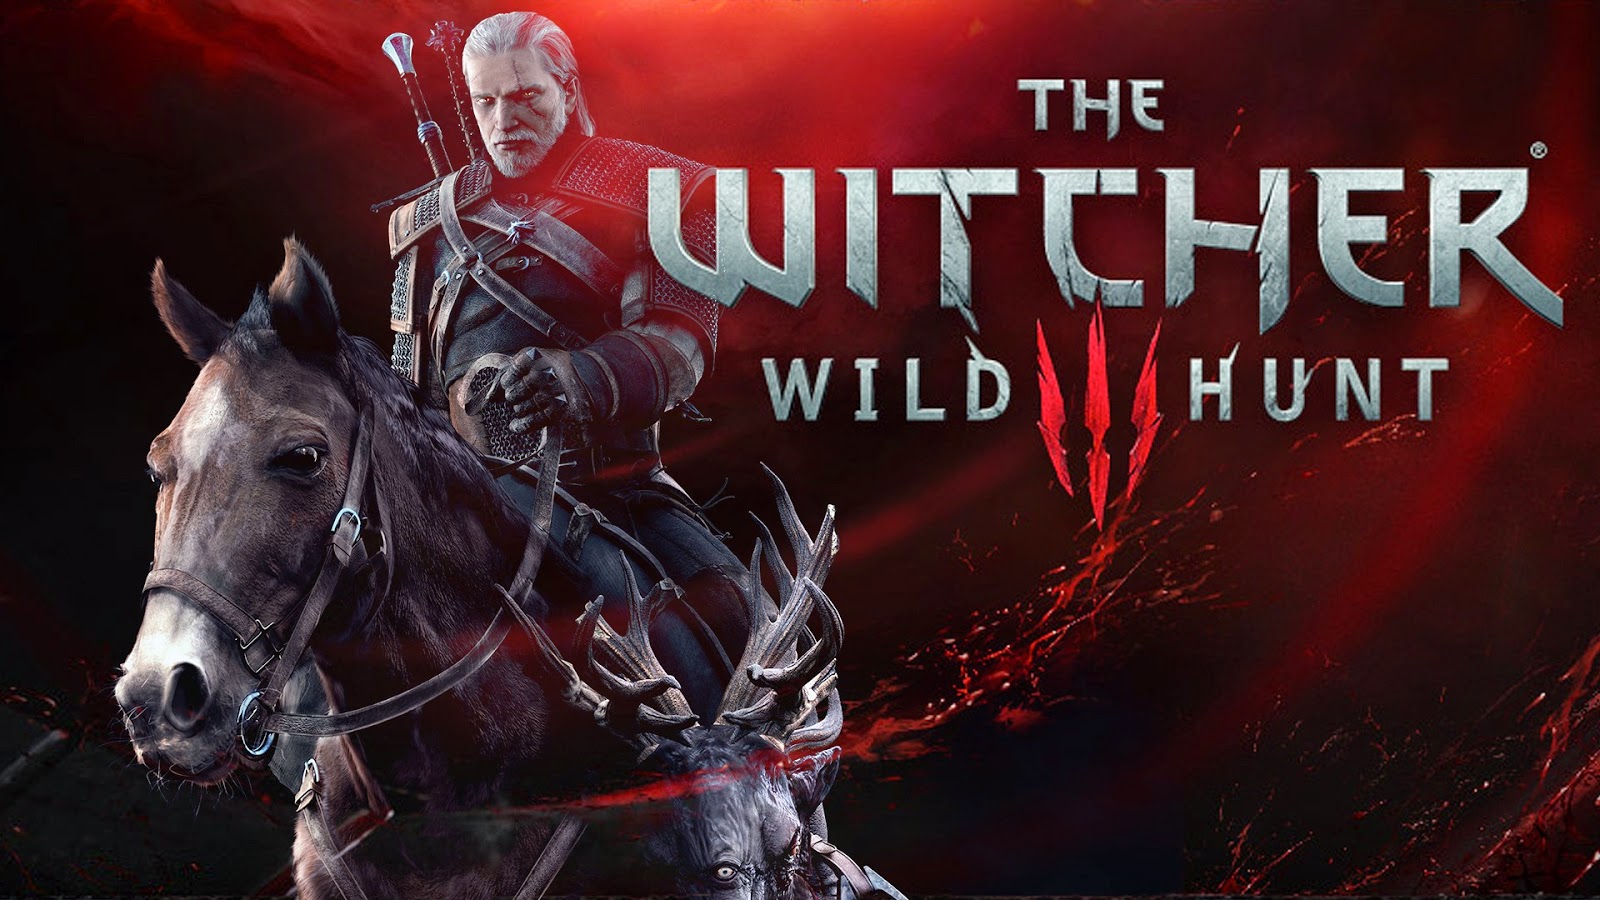 The Witcher 3 ganha update de quase 1 GB no PC pra correções